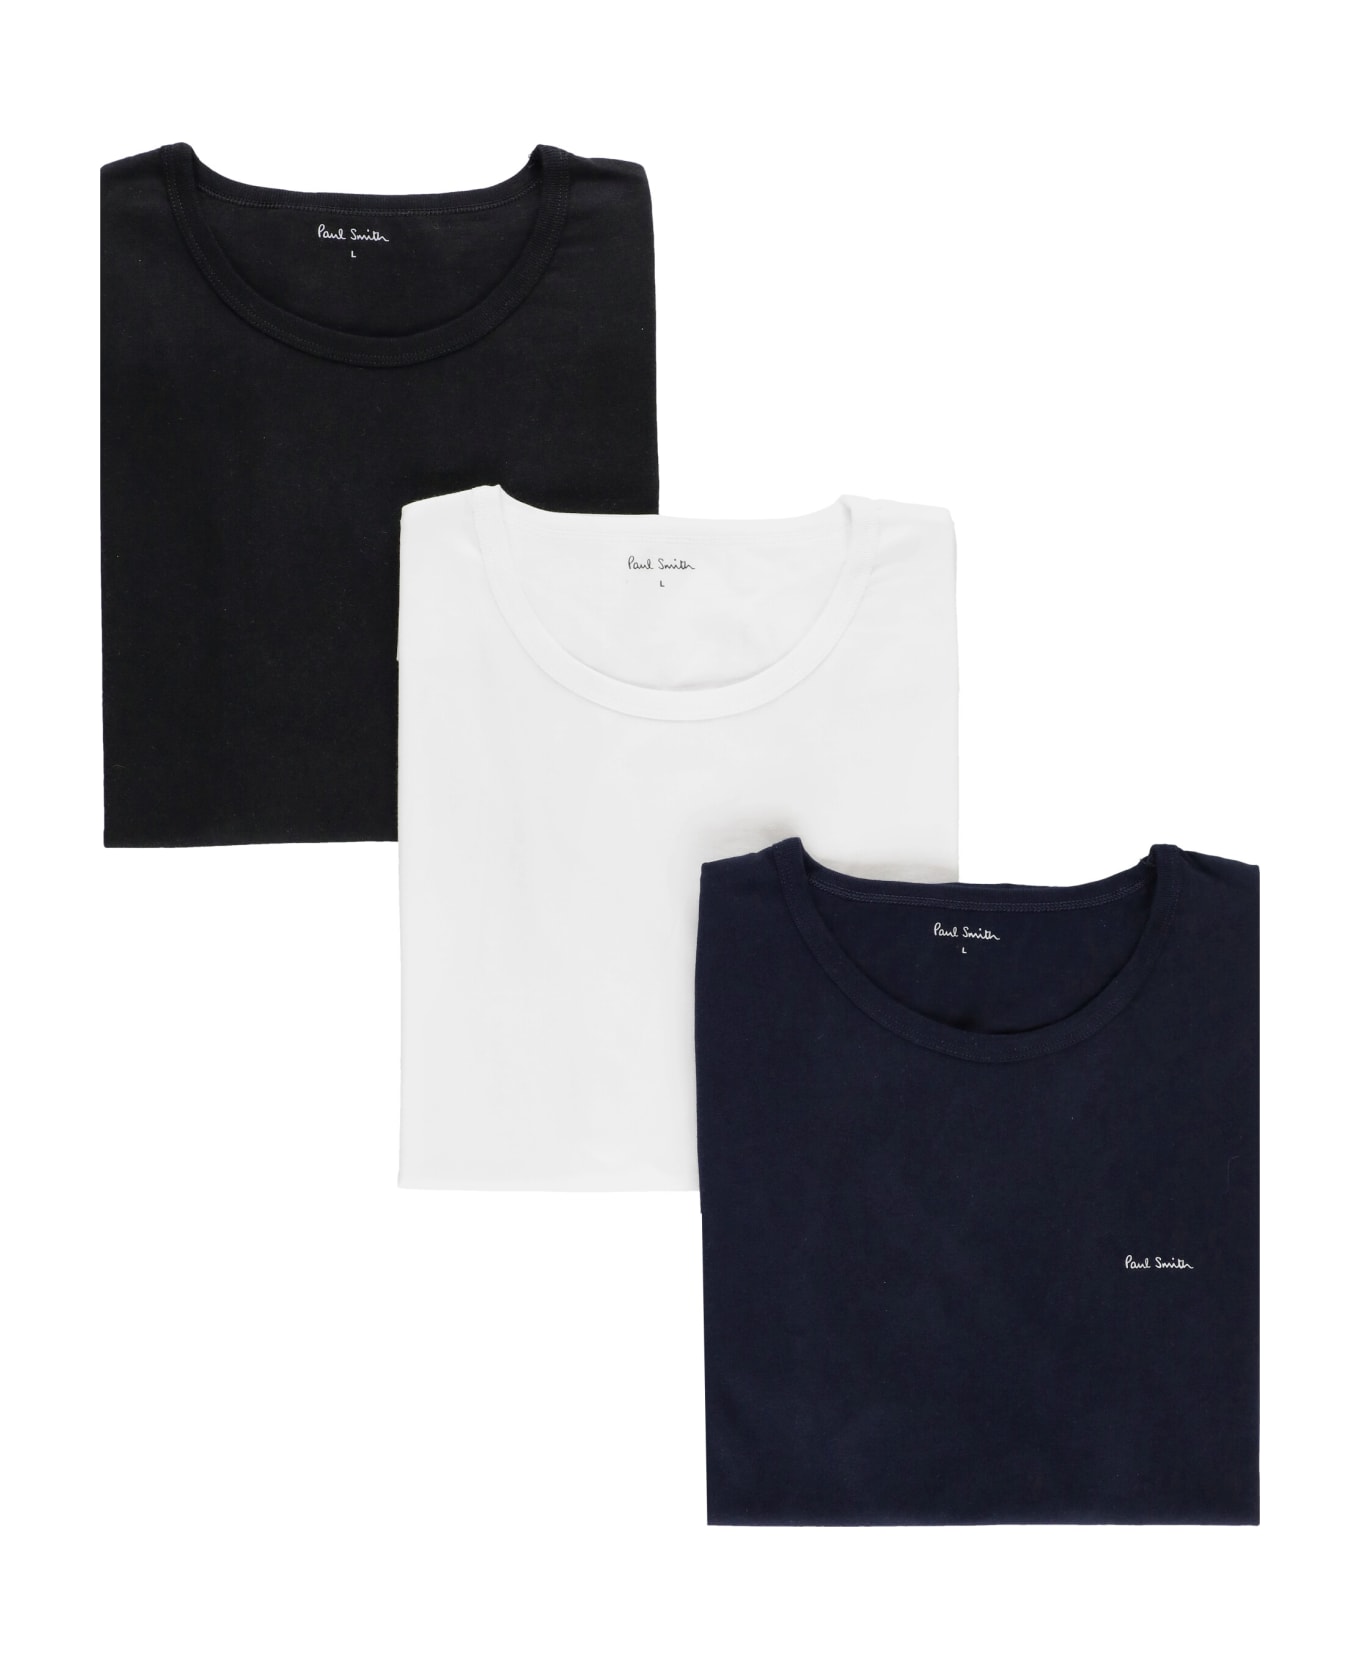 Paul Smith 3 Cotton T-shirt Set - MultiColour